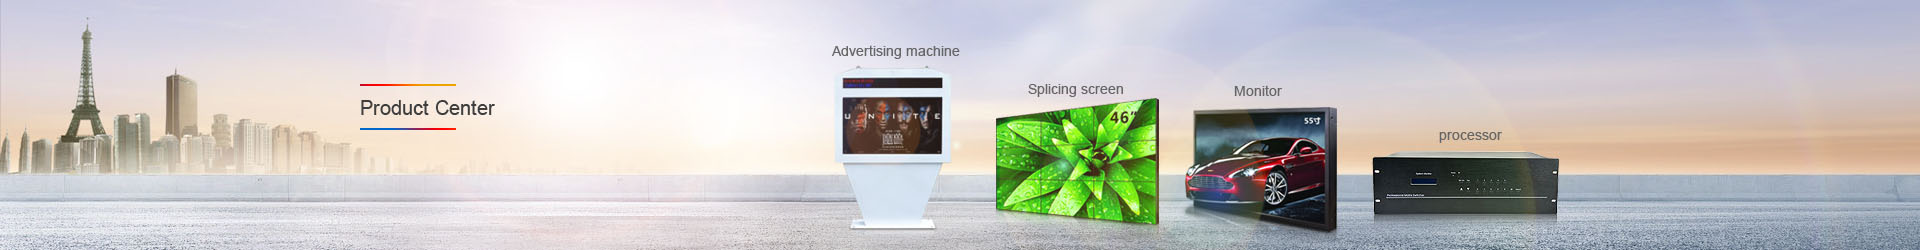 Advertising machine